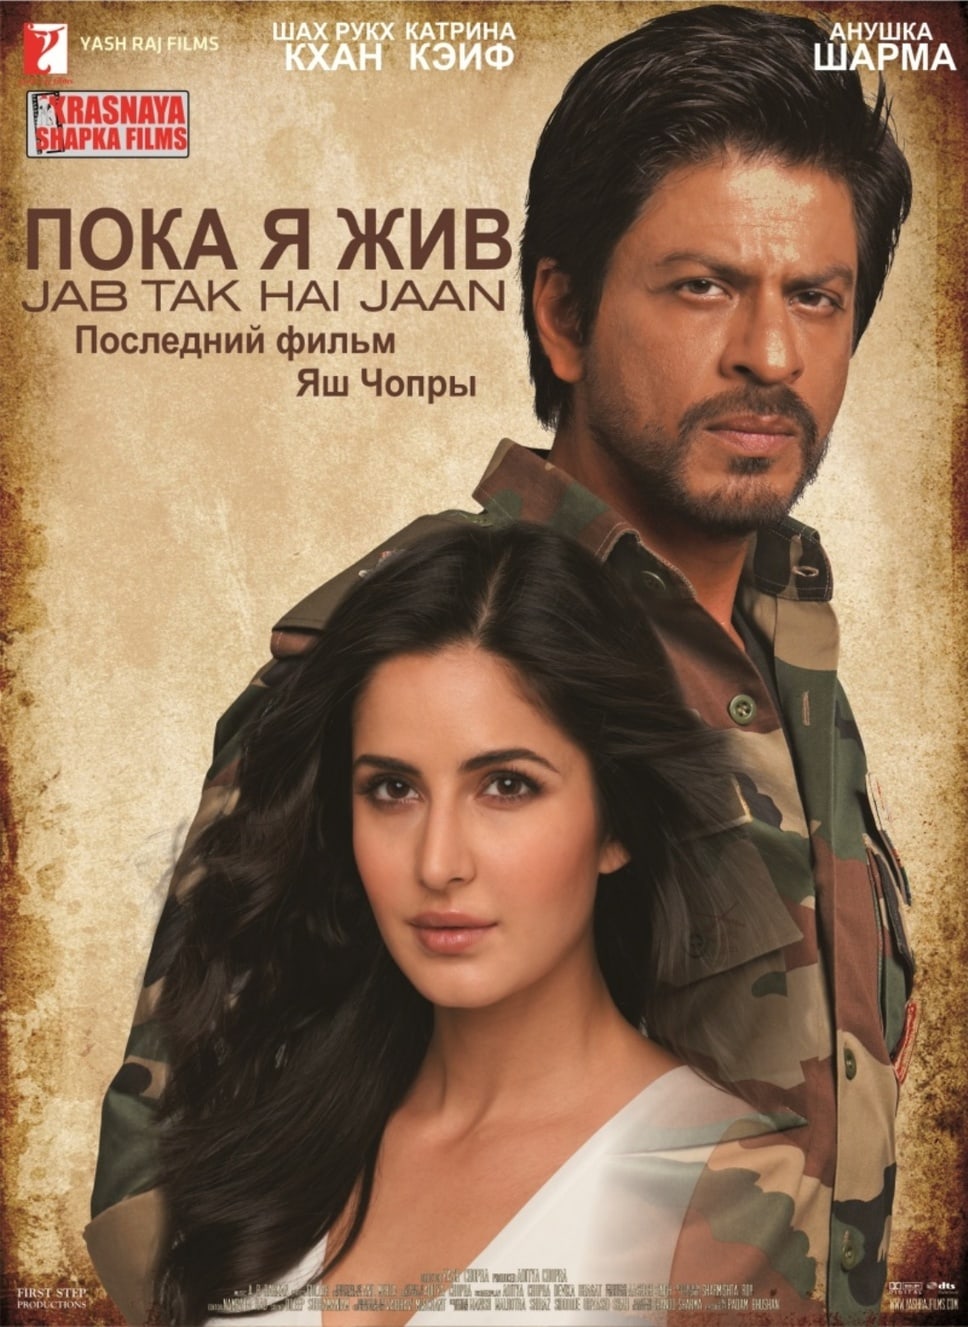 jab tak hai jaan full movie download in hindi